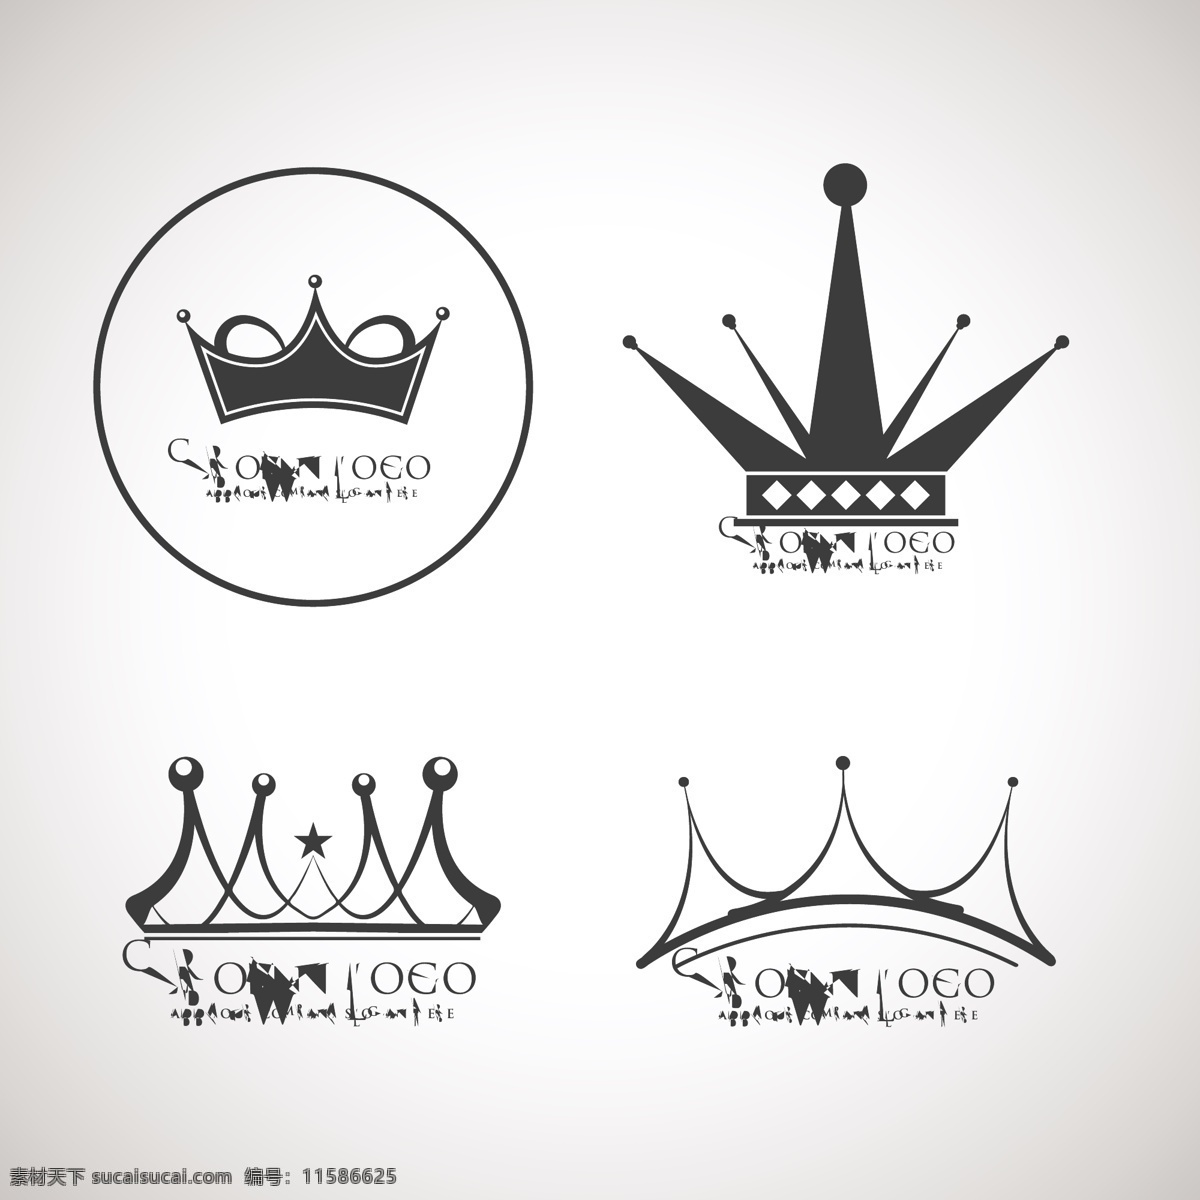 矢量 皇冠 企业 标志 logo 公司logo 企业logo 企业标志 标志设计 图标 公司图标 矢量素材 标志图标 皇冠图标